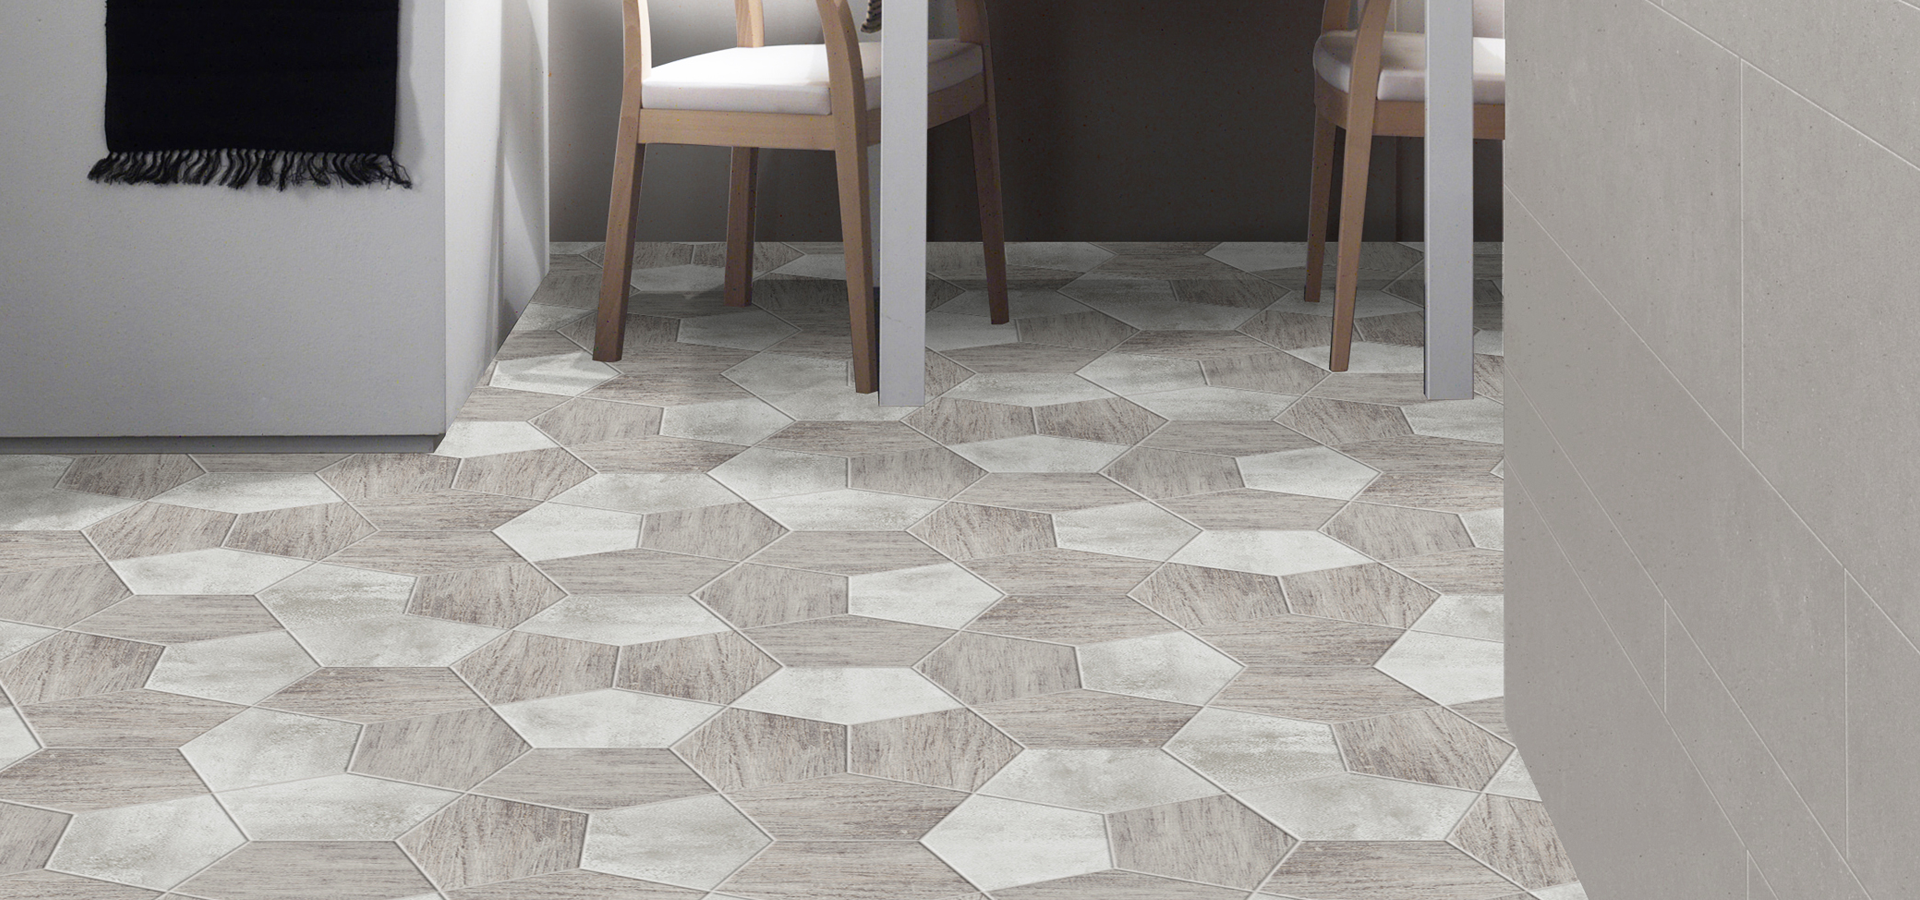 mosaico pavimento cucina ceramica decorazione casa interior design